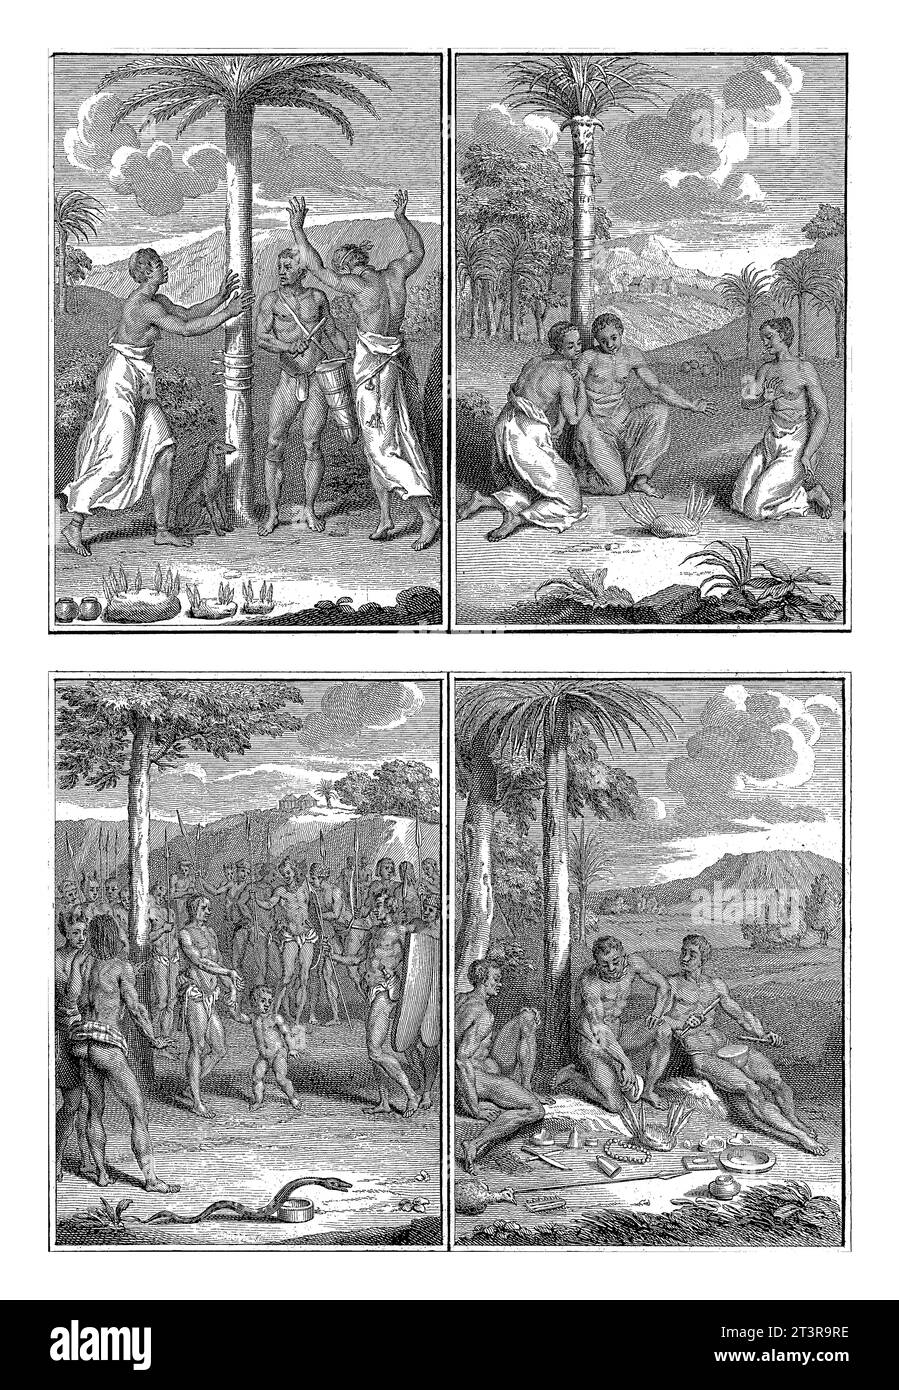 Rituali degli abitanti della Guinea, Bernard Picart (laboratorio di), 1726 rivista con quattro rappresentazioni dei rituali degli abitanti della Guinea. Foto Stock